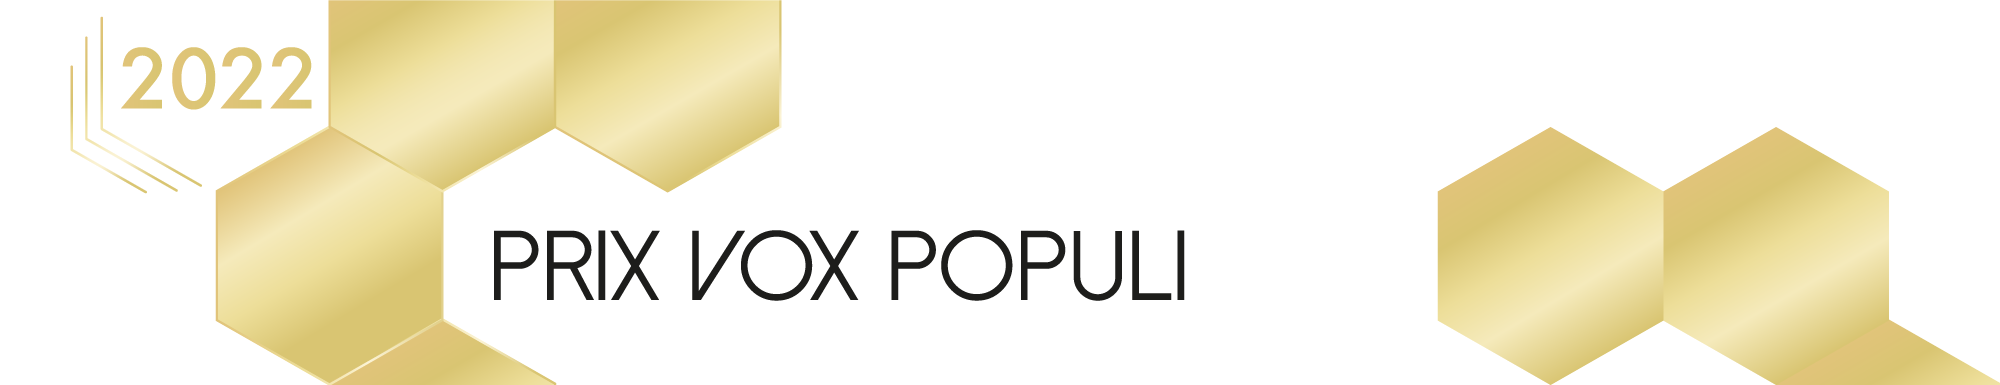 Prix Vox populi 2022